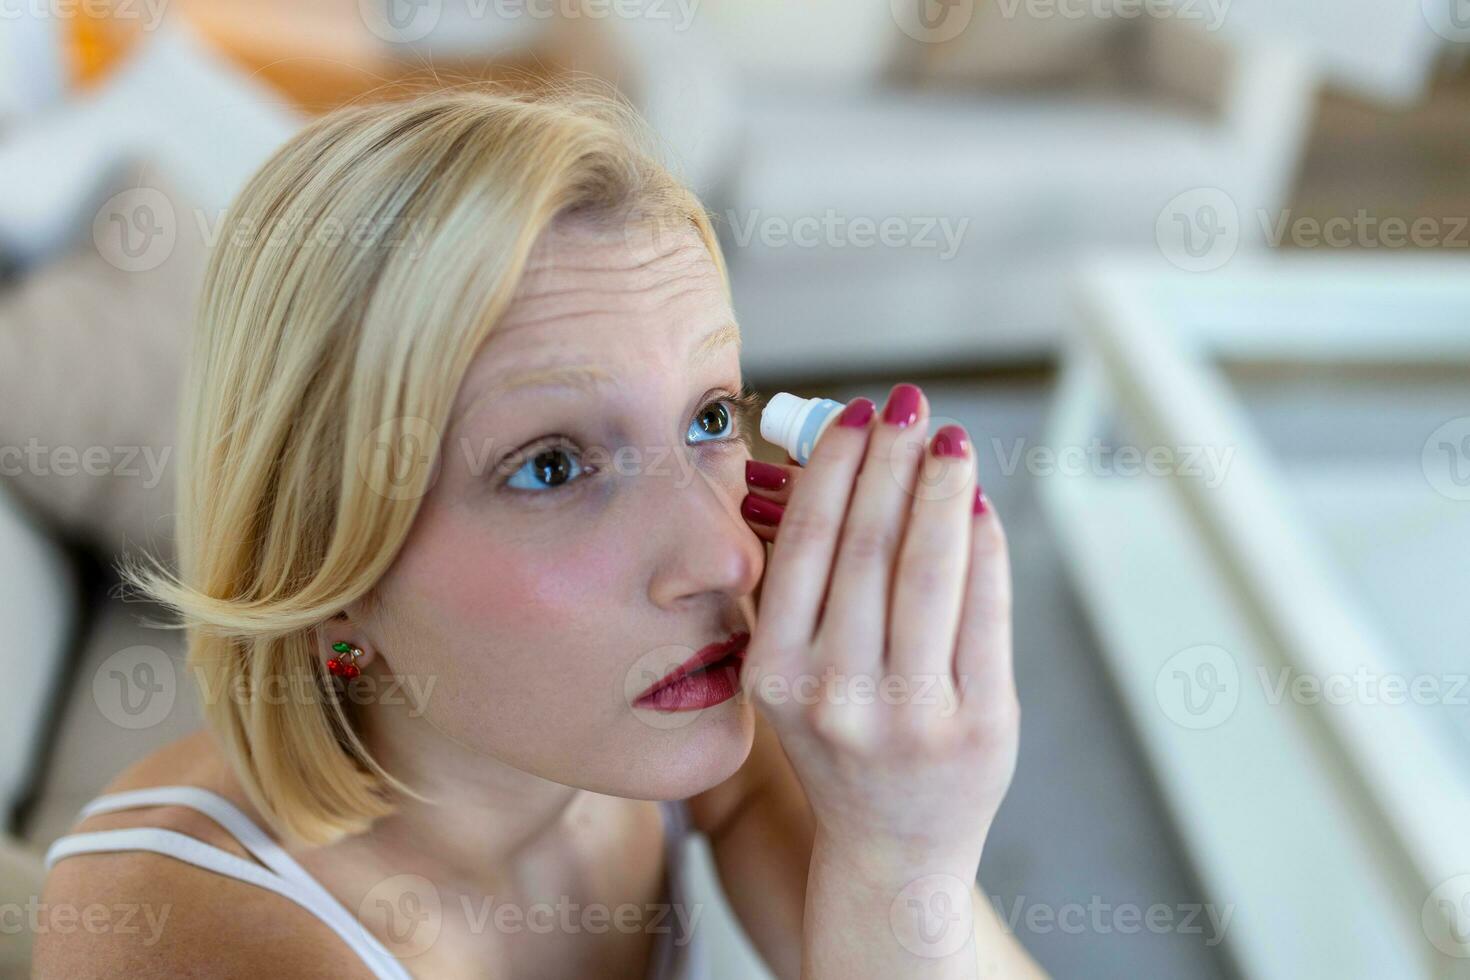 femme en utilisant œil goutte, femme goutte œil lubrifiant à traiter sec œil ou allergie malade fille traiter globe oculaire irritation ou inflammation malade femme Souffrance de irrité œil, optique symptômes photo